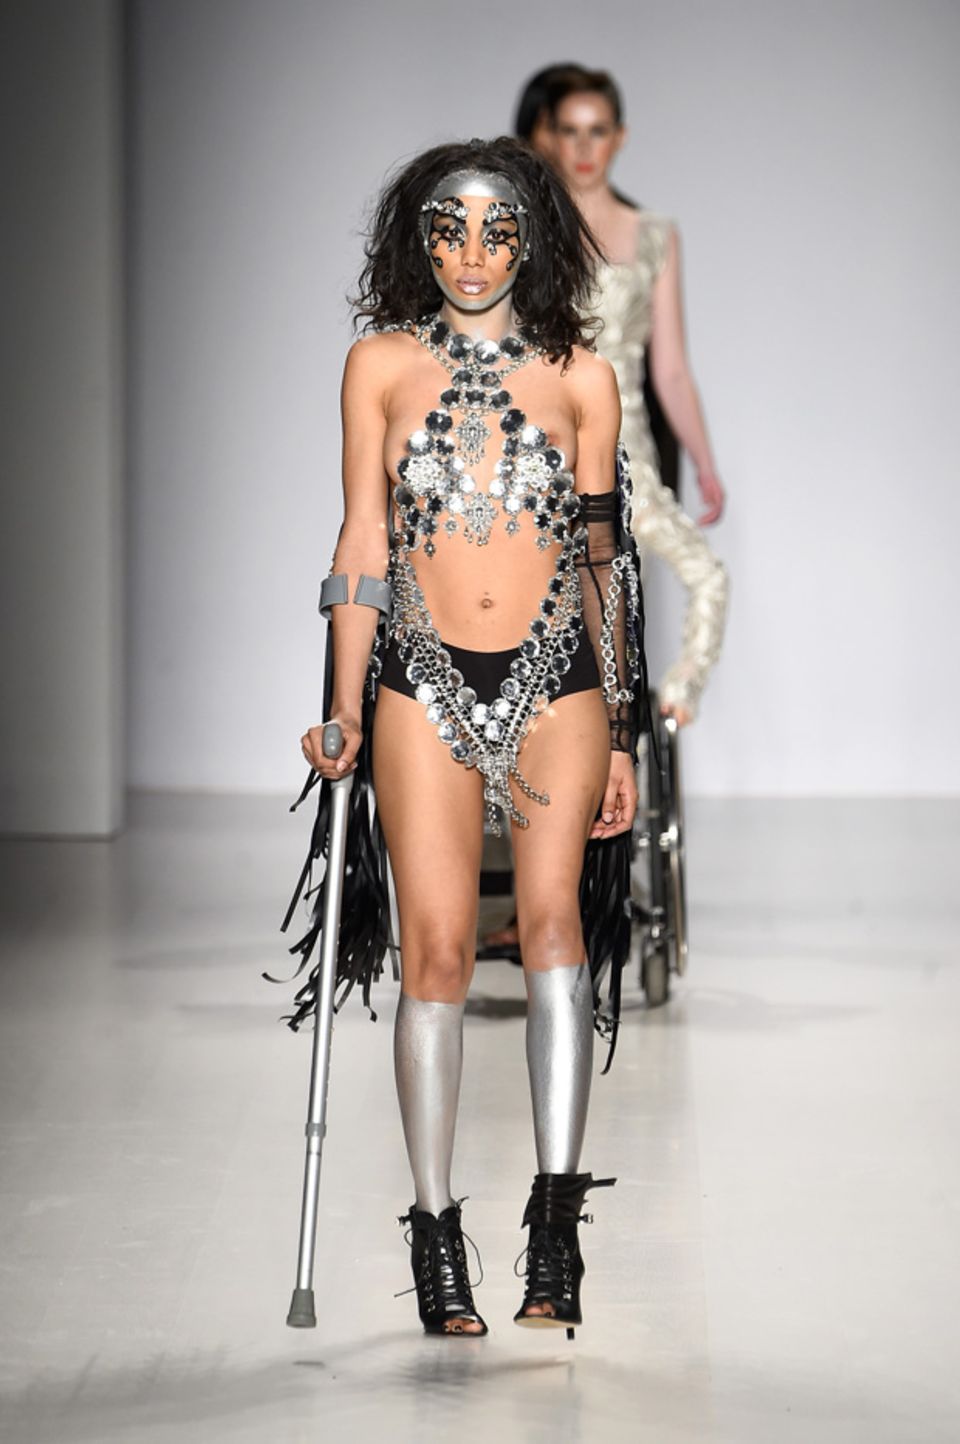 Models im Rollstuhl - Vielfalt bei der New York Fashion Week